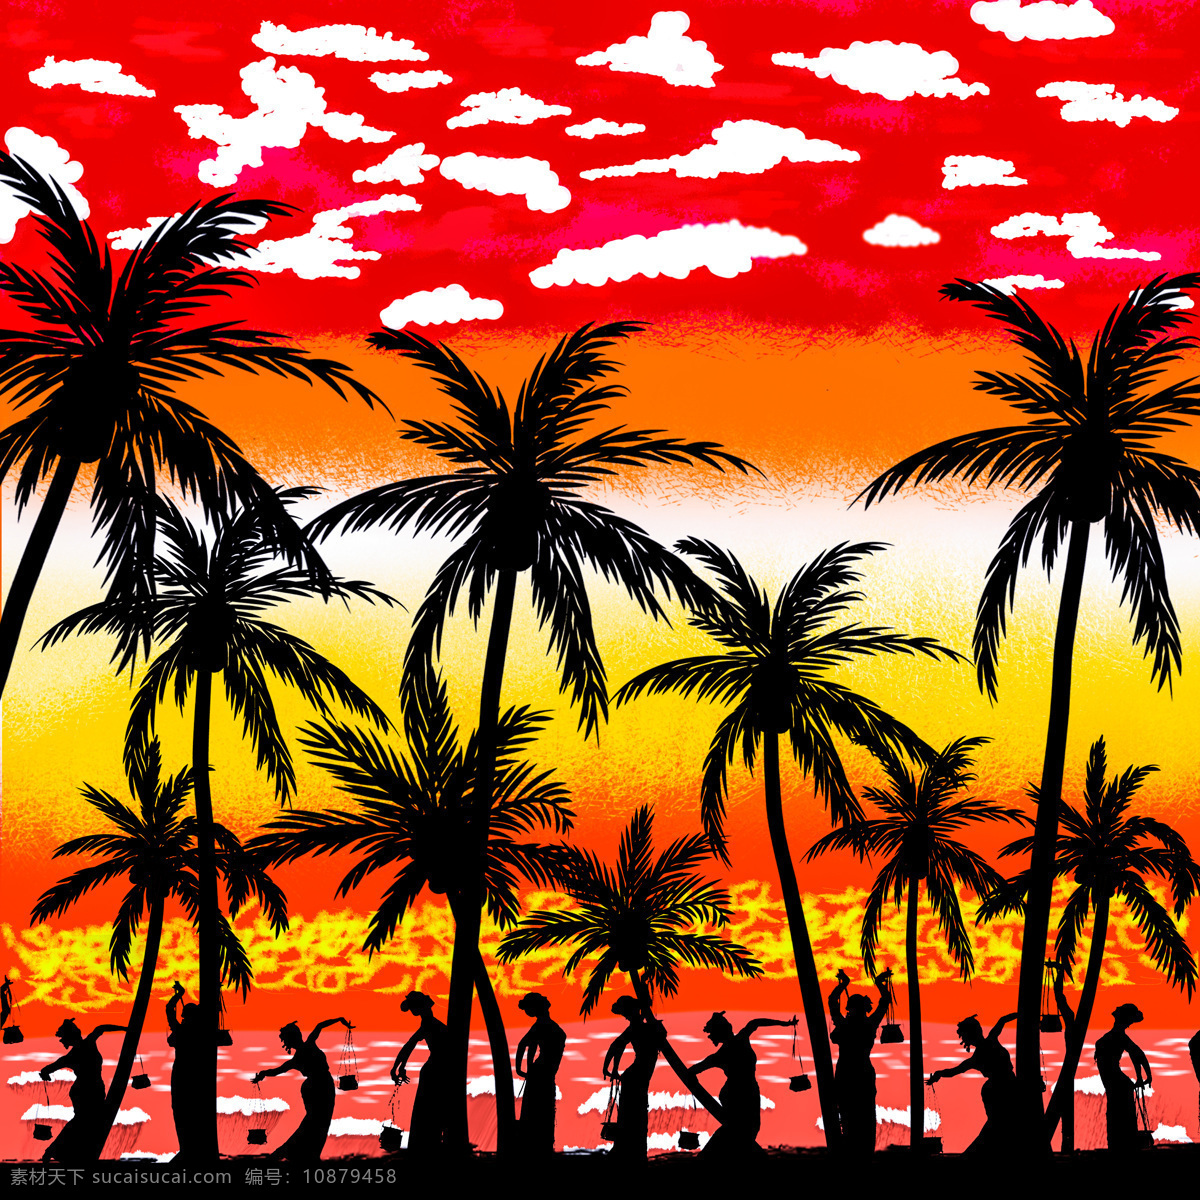 手绘 椰子树 剪影 插画 贴图 卡通椰子树 波浪 海浪 水花 卡通树 矢量树 椰子 树木树叶 生物世界 矢量 泳衣 游泳 帆船